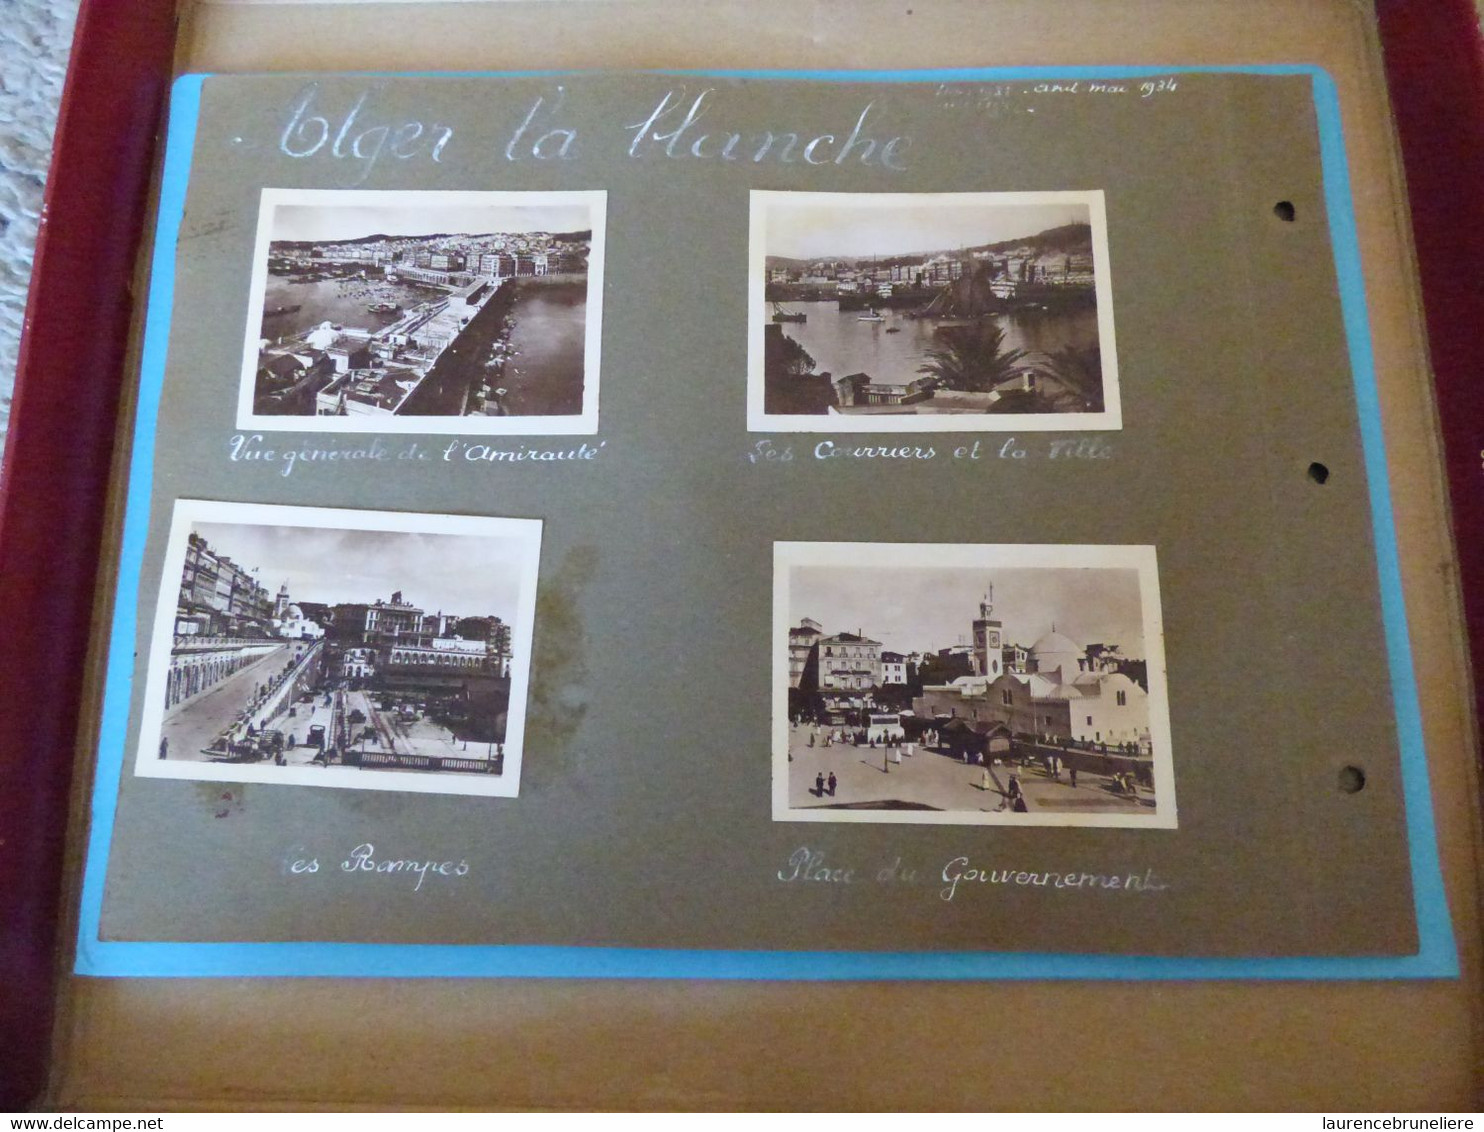 MISSION SISMIQUE DU PORT D'ALGER 1934  -  André LAUNAY INGENIEUR DES MINES  A SAINT-NAZAIRE - Places